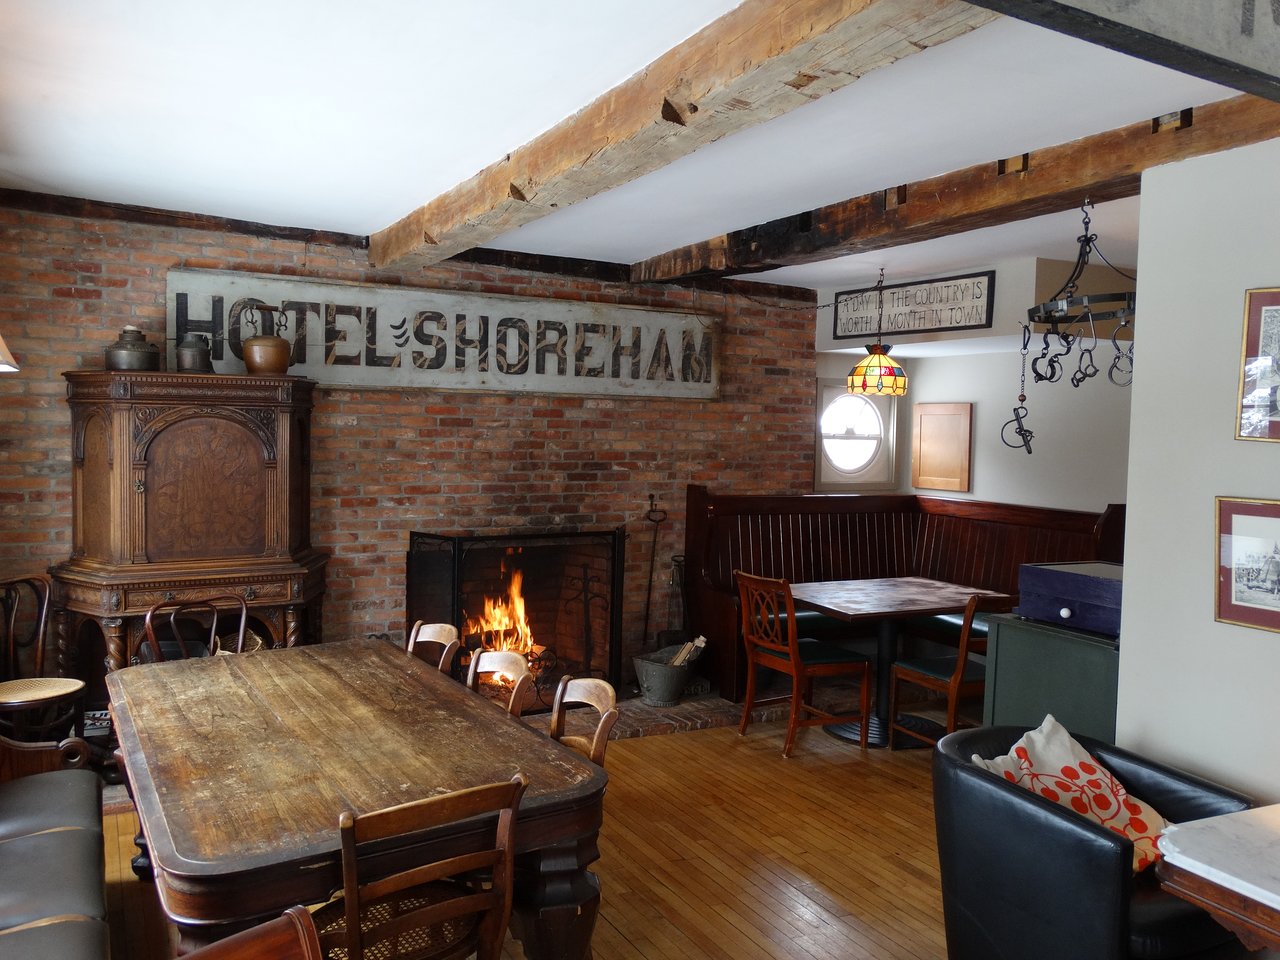 Bars with Fireplaces Nyc Beautiful Shoreham Inn $150 $Ì¶1Ì¶6Ì¶4Ì¶ Updated 2019 Prices & Reviews